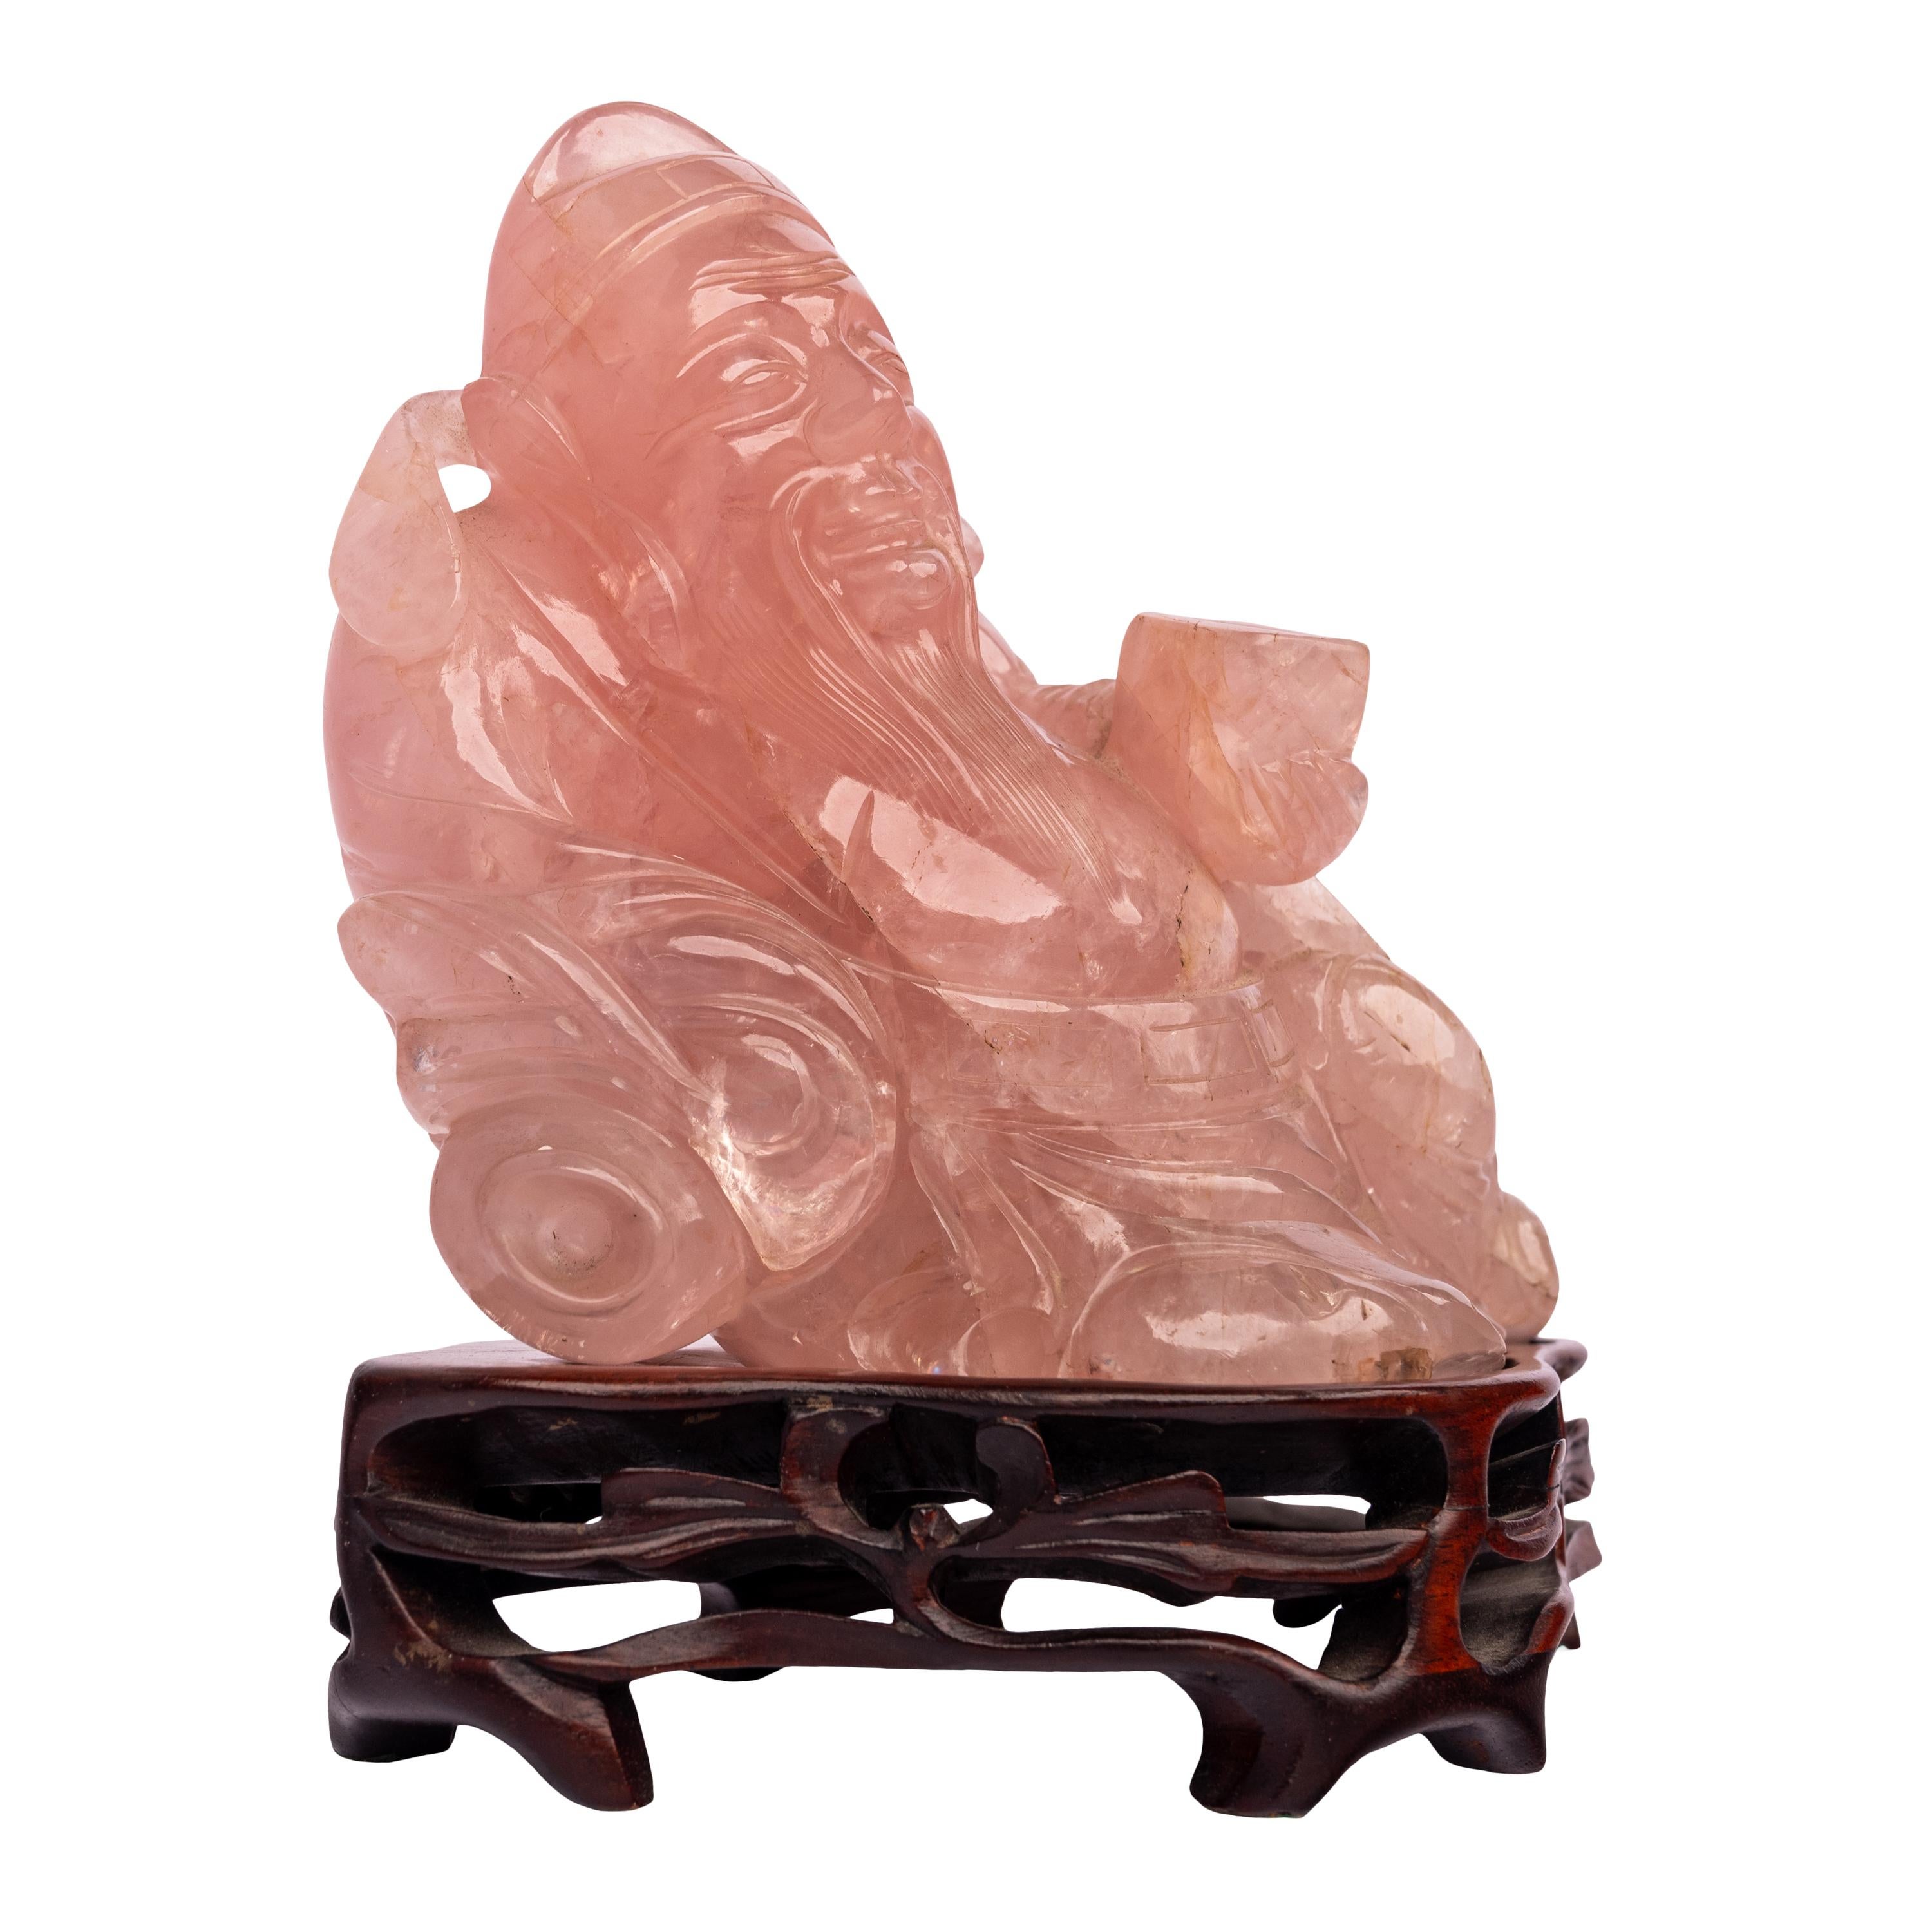 Eine gute antike chinesische Qing-Dynastie geschnitzt Rosenquarz Buddha / Hotei Figur auf einem geschnitzten Palisanderholz Stand, um 1910.
Die als buddhistische Liegefigur modellierte Figur ist fein aus Rosenquarz geschnitzt und ruht auf einem